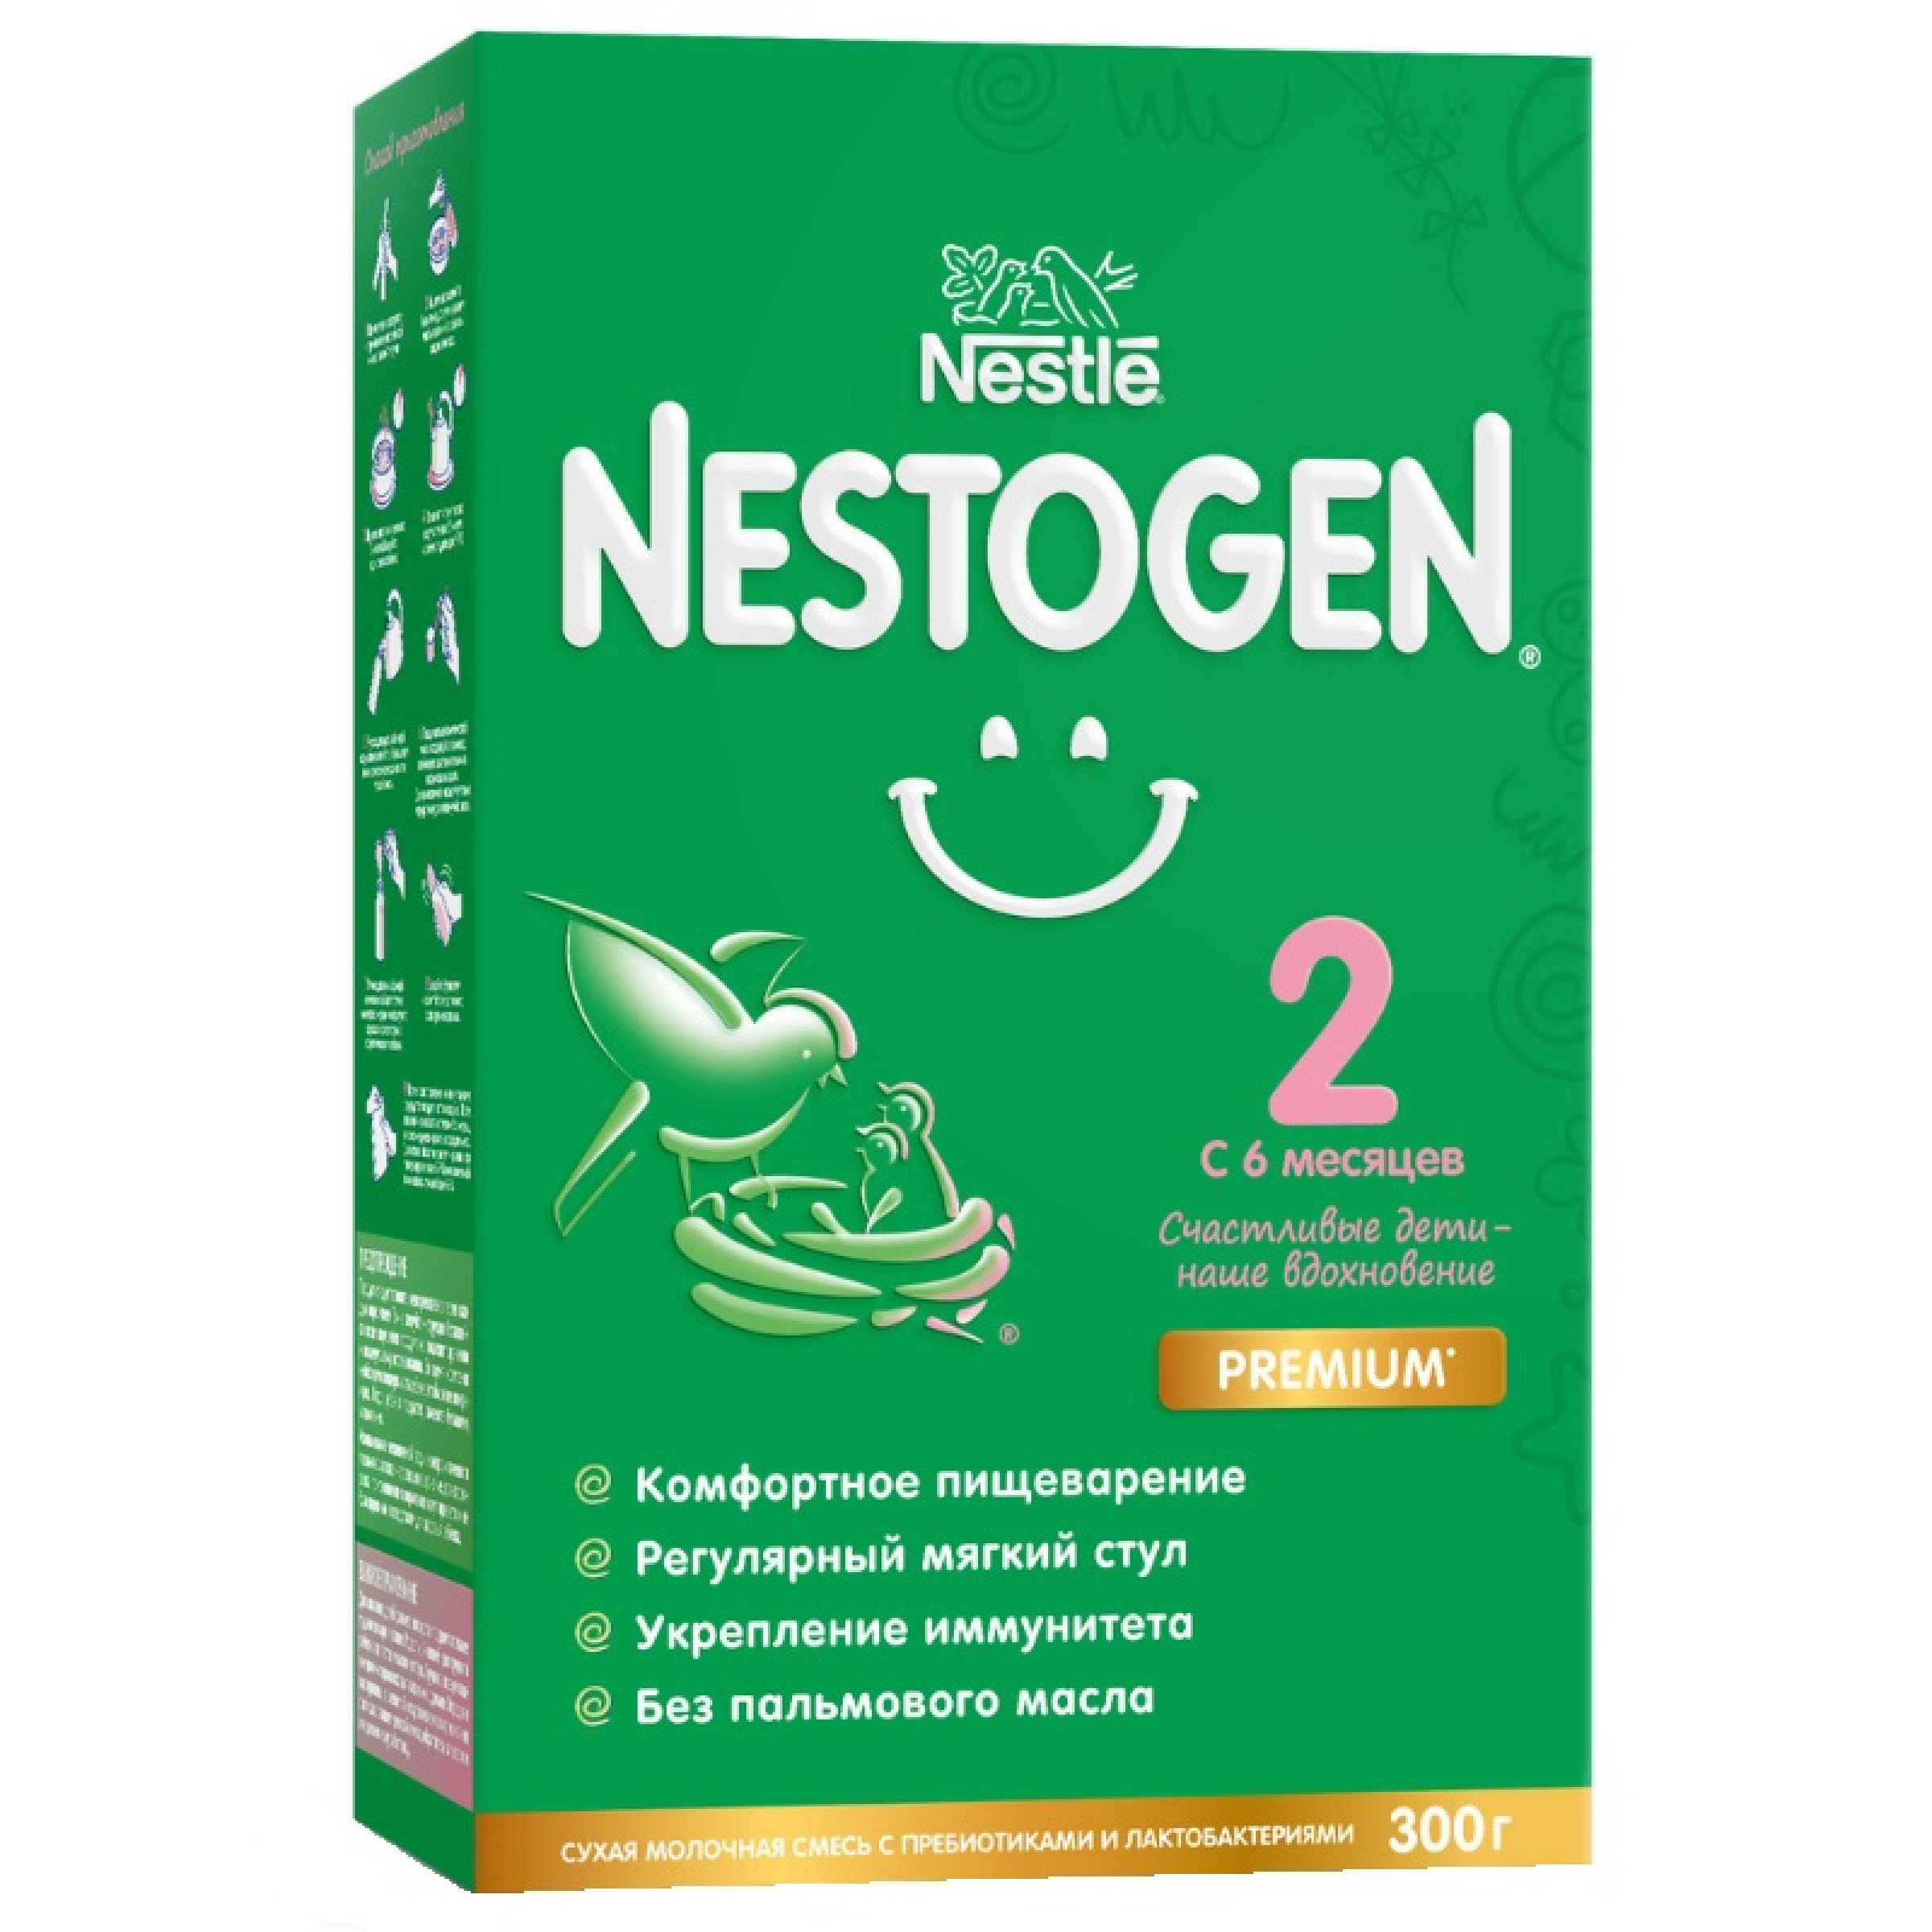 Молочная смесь для регулярного мягкого стула Nestle Nestogen Premium 2 с 6 месяцев 300 г